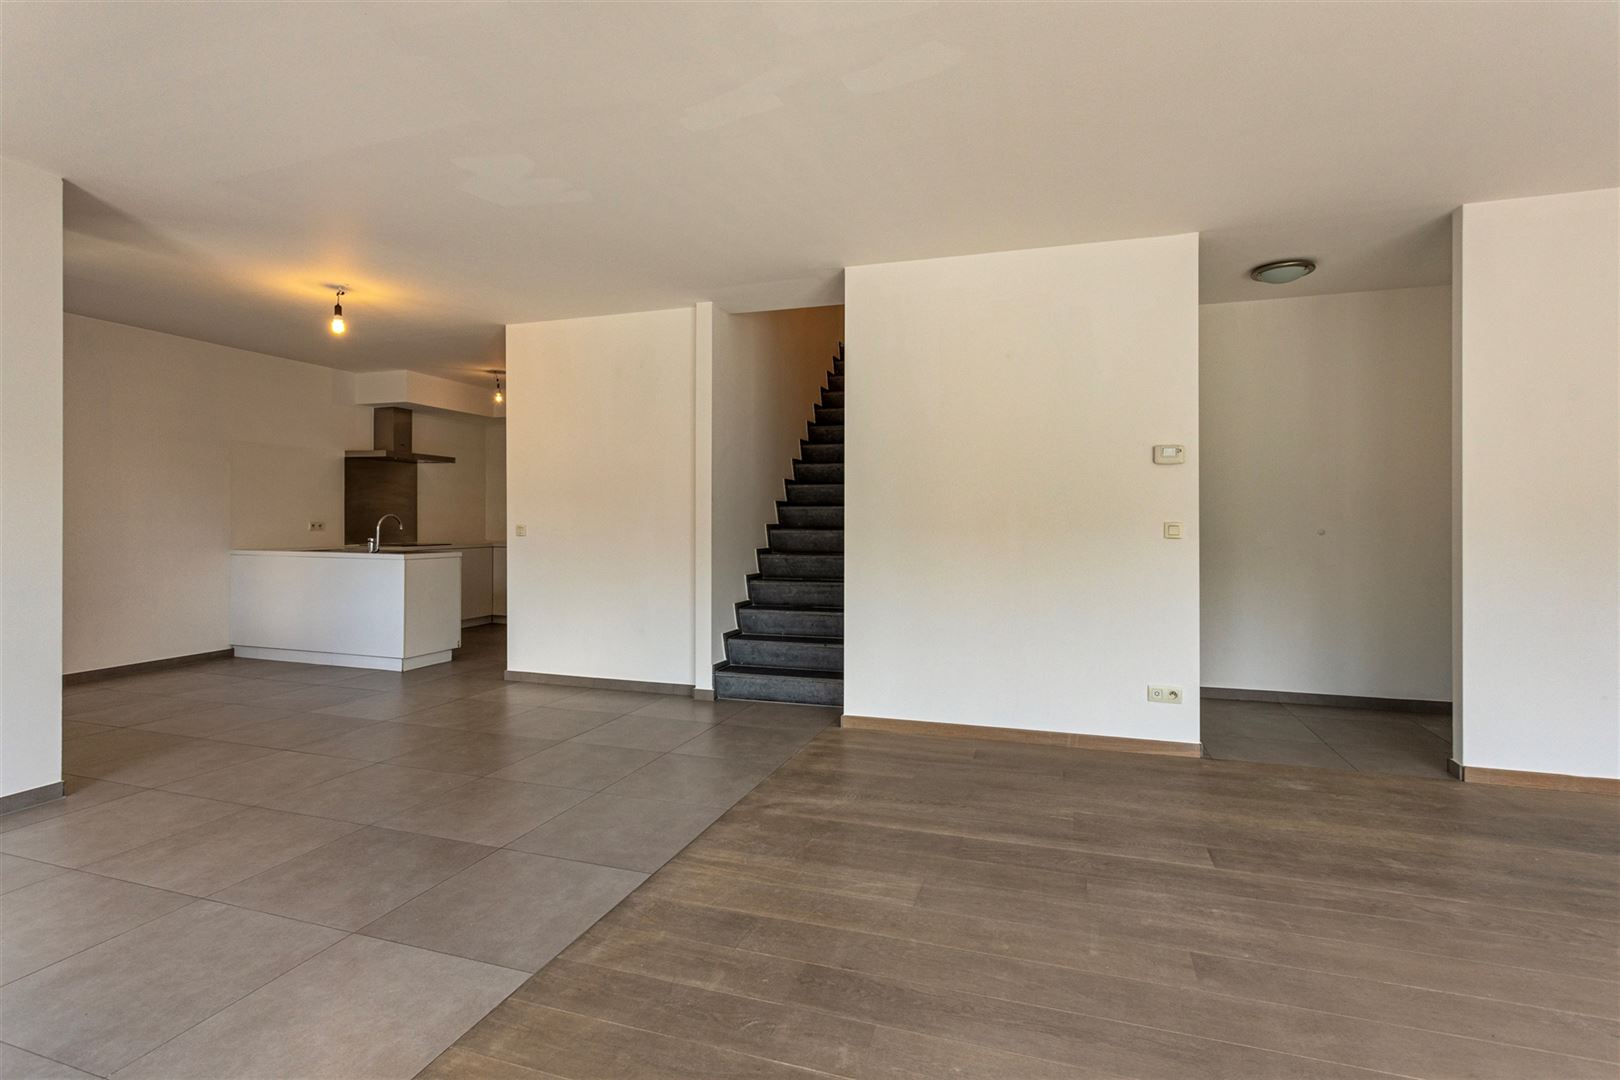 Duplex appartement van 168 m² op Eilandje met dubbele autostaanplaats foto 4